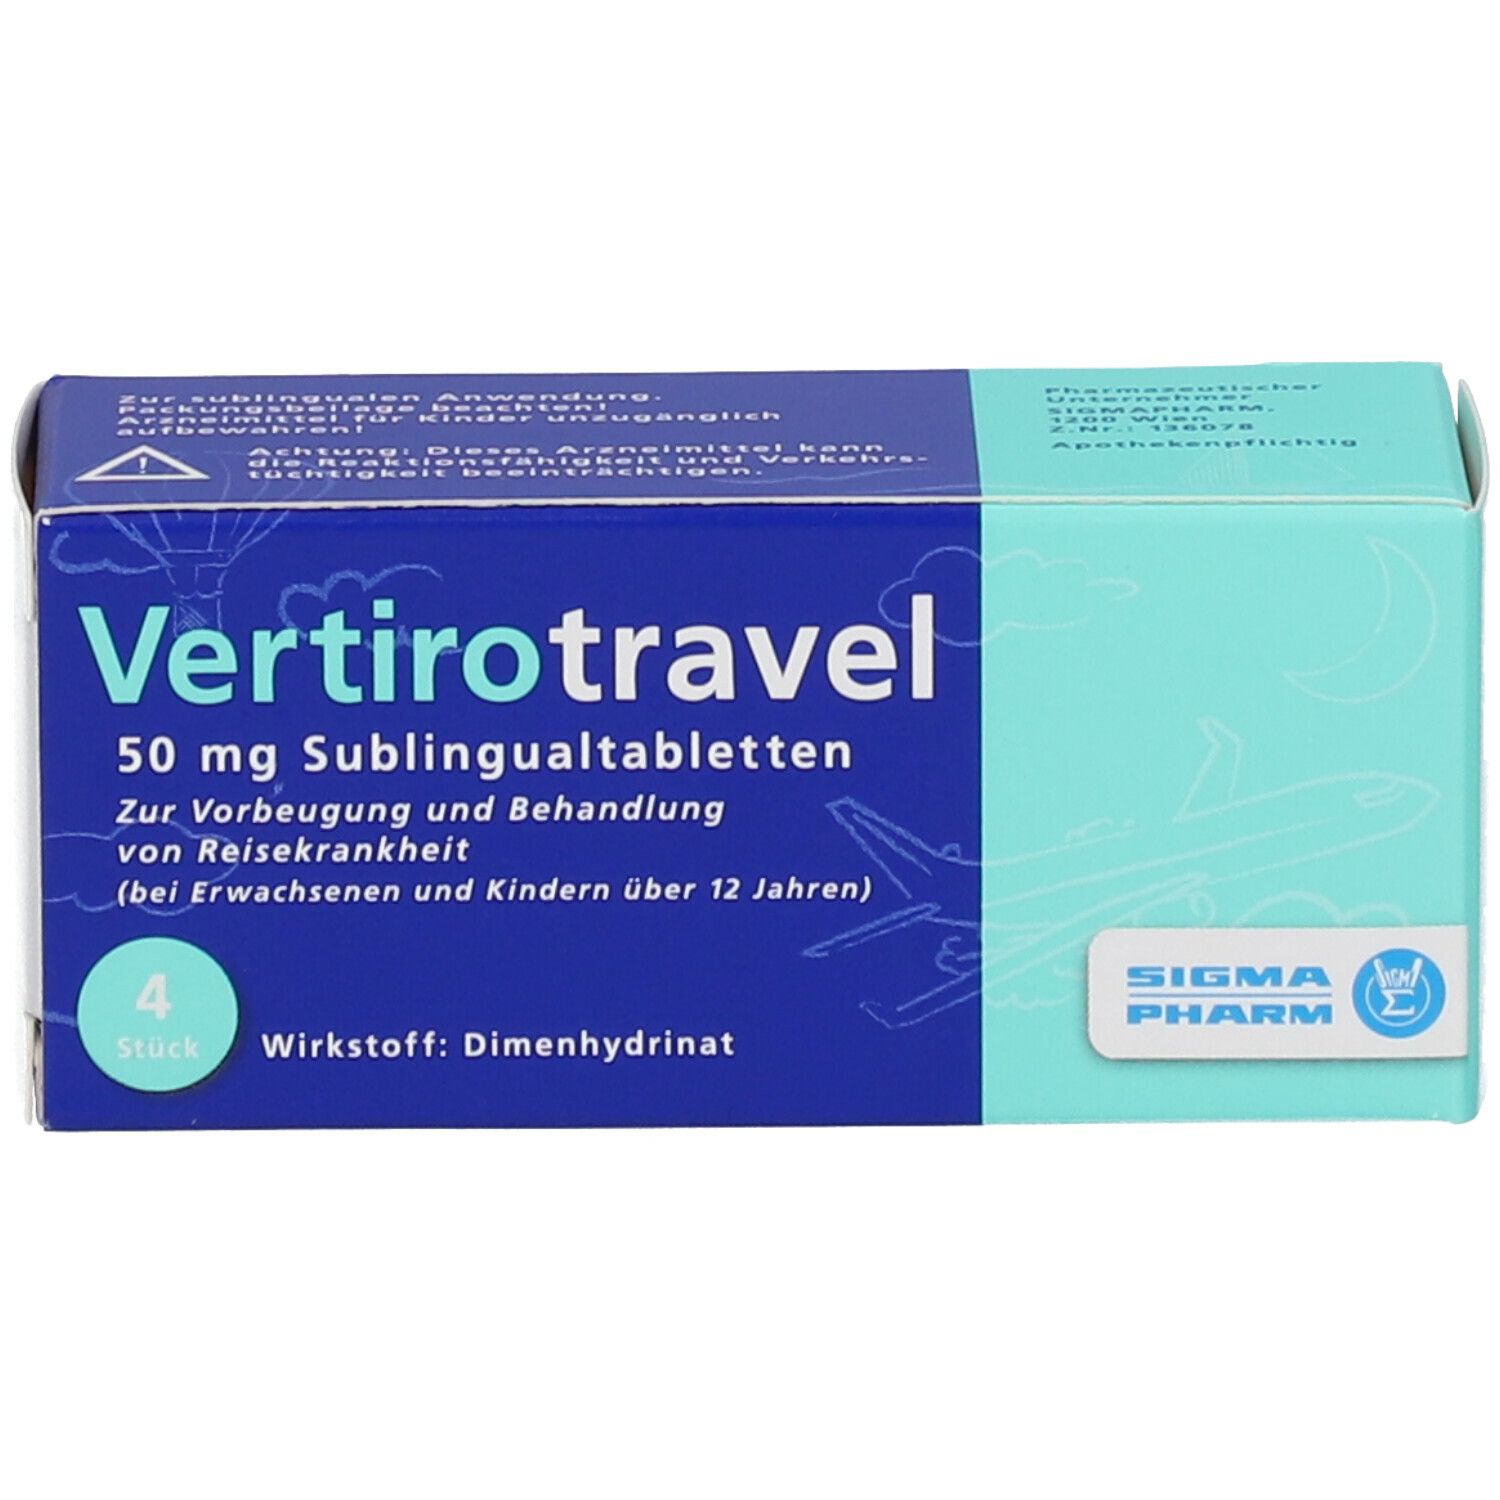 Vetirotravel 50 mg